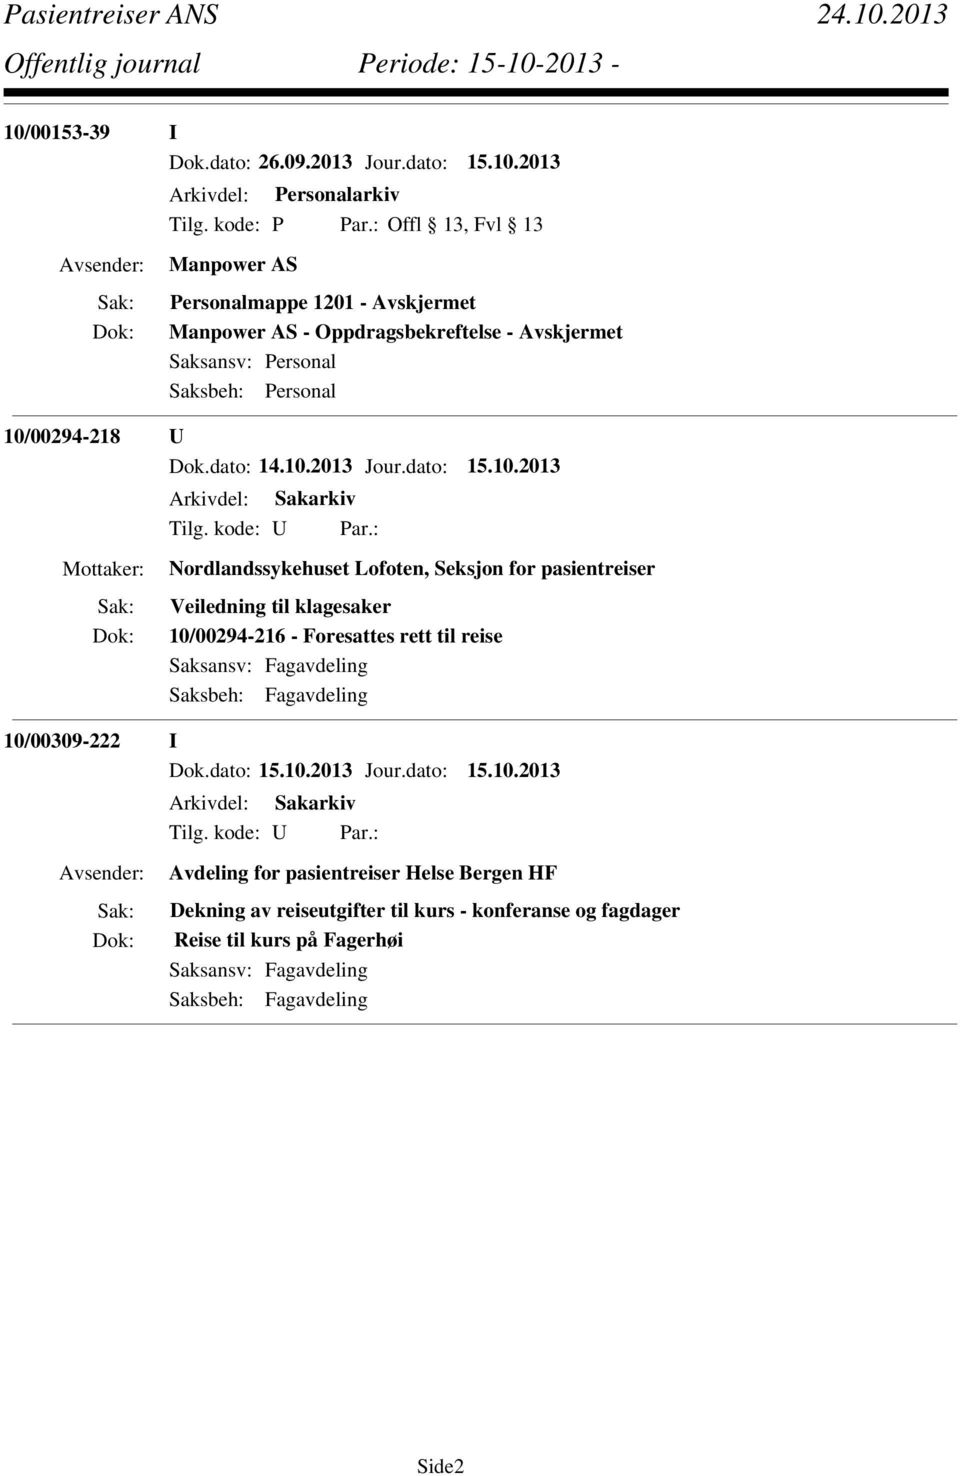 reise Saksansv: Fagavdeling Saksbeh: Fagavdeling 10/00309-222 I Avdeling for pasientreiser Helse Bergen HF Dekning